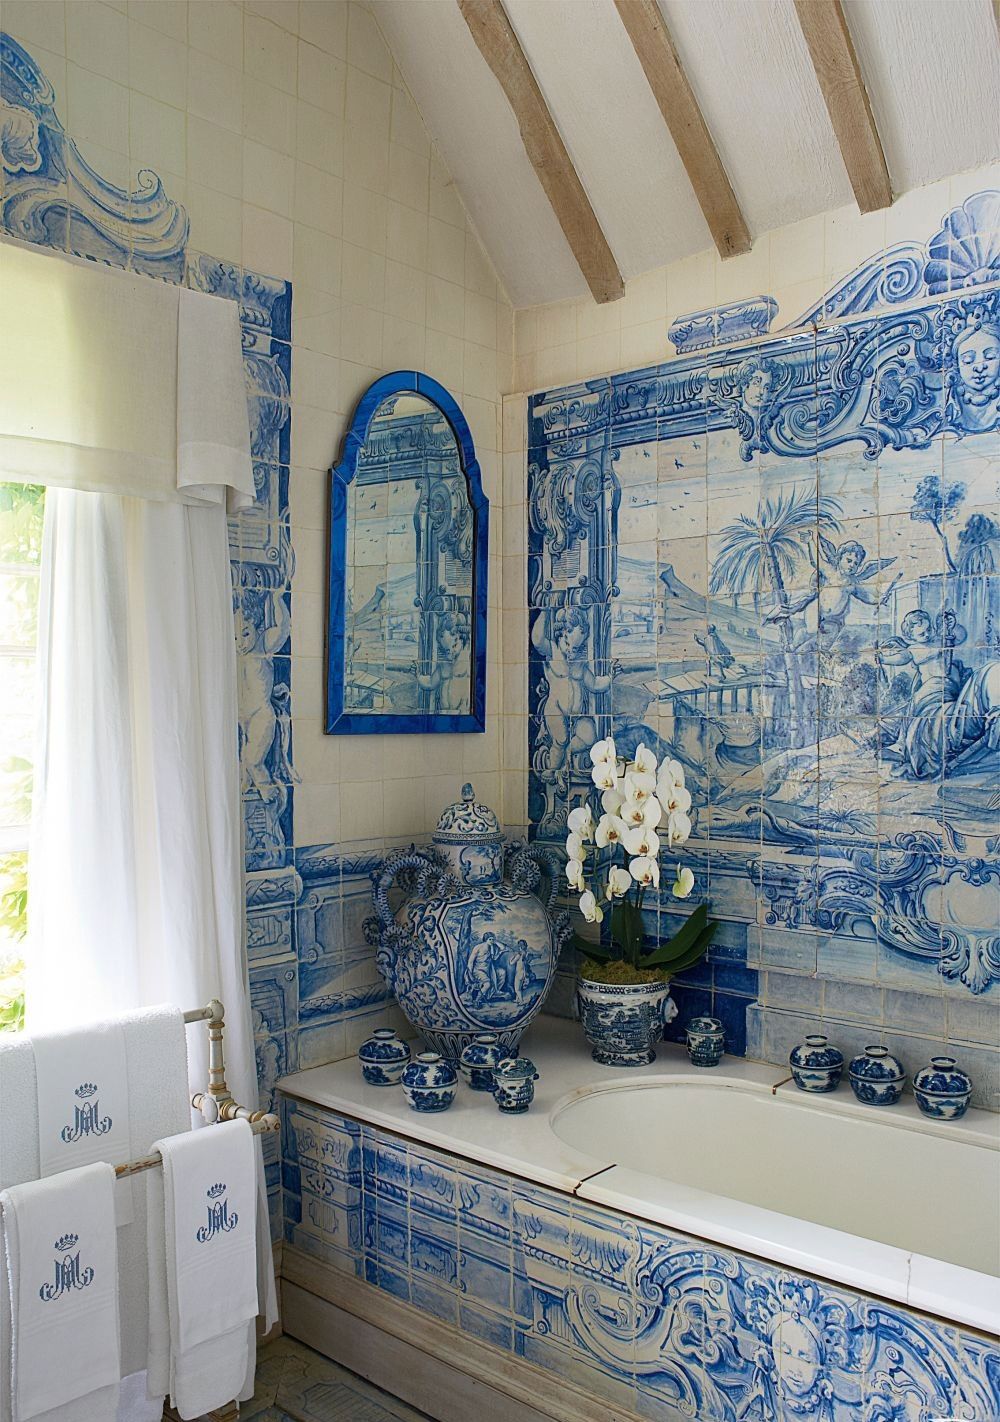 Росписи голландского фарфора на керамической плитке для ванной